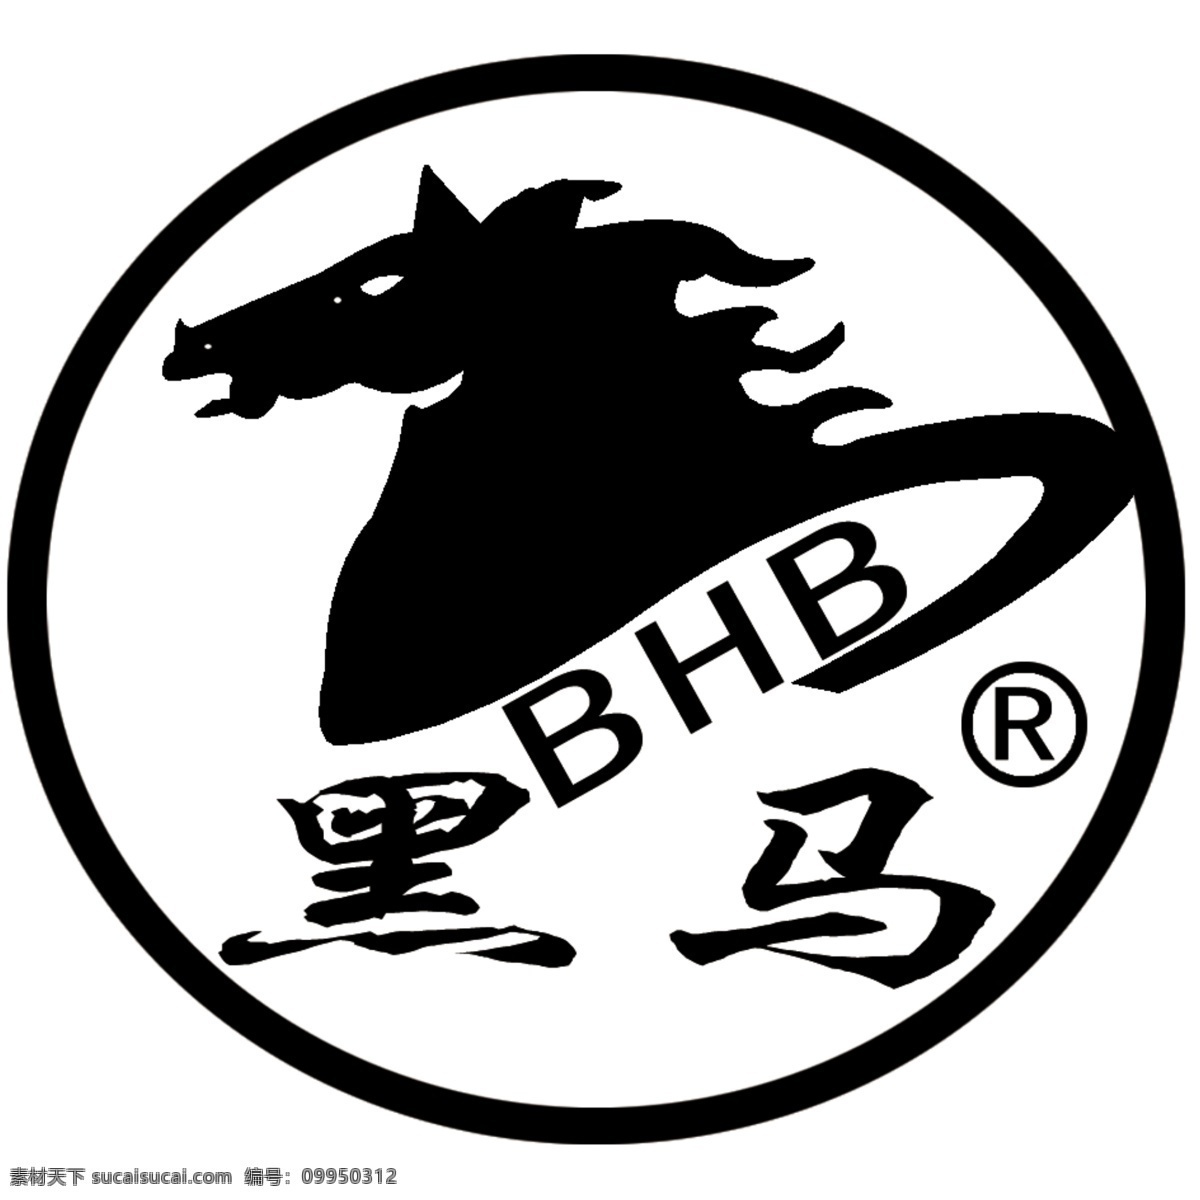 黑马标志 黑马 自行车 标志 广告设计模板 国内广告设计 黑马自行车 源文件库